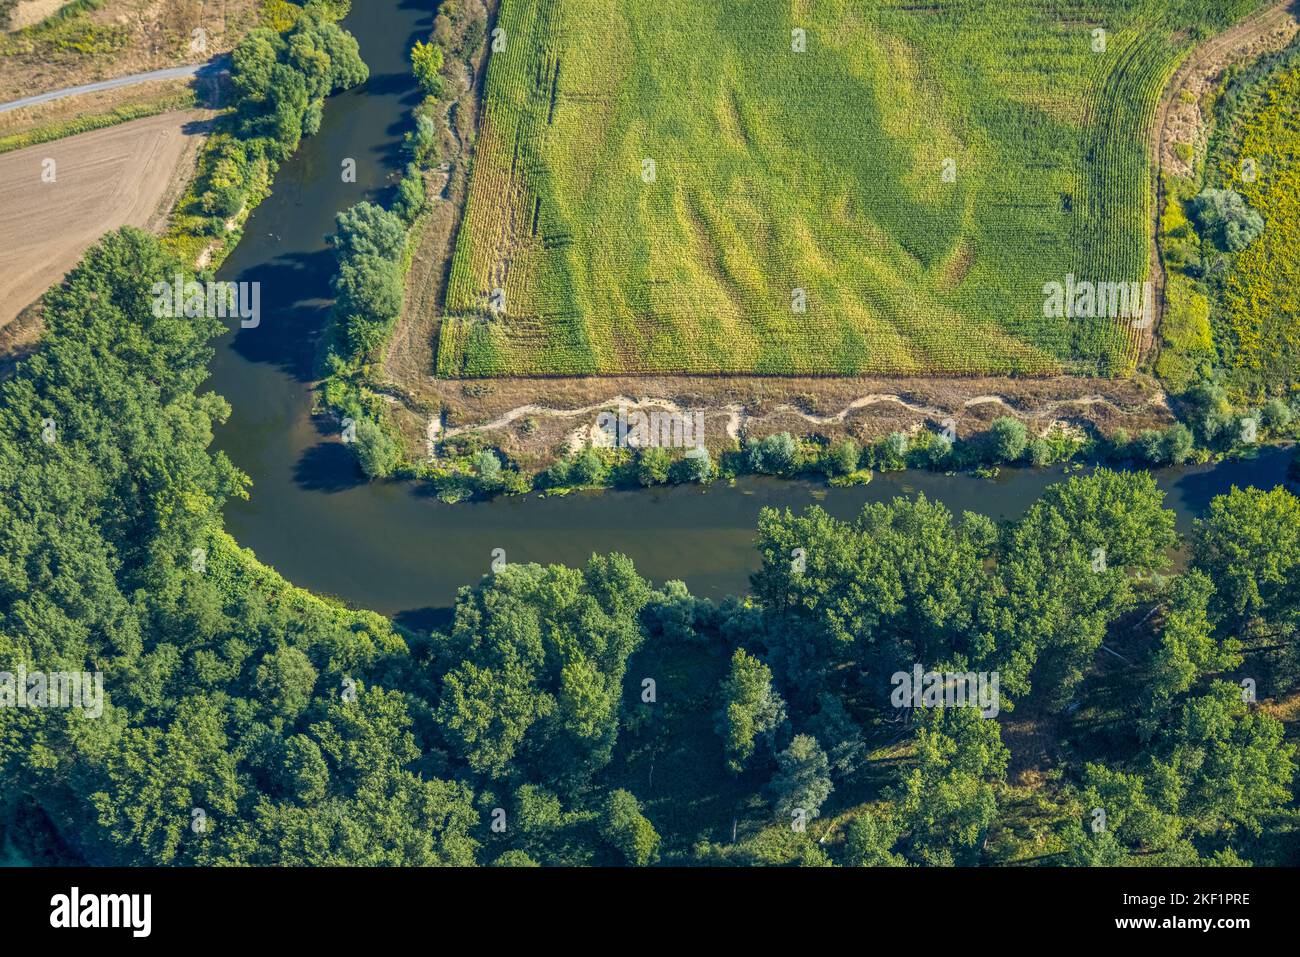 Vista aerea, fiume Lippe, corso del fiume ad angolo retto, fiume e sviluppo di pianura alluvionale del Lippe Vogelsang, rinaturazione, sandbank NSG Lippeaue, cit Foto Stock